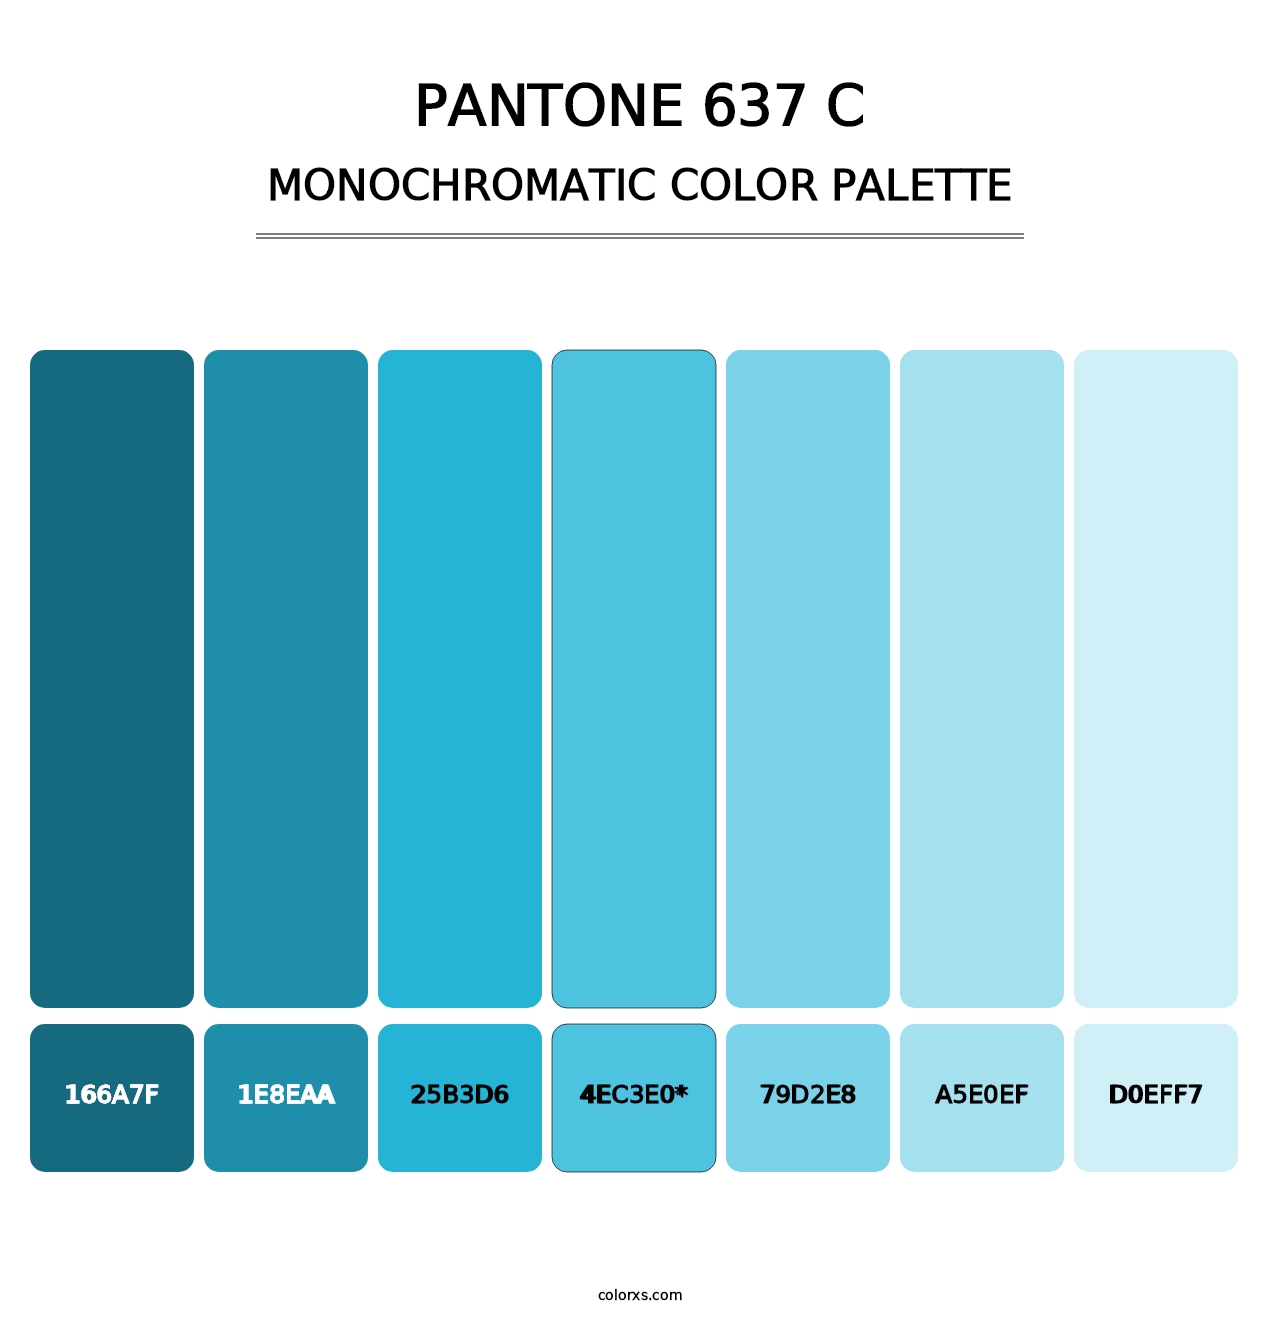 PANTONE 637 C - Monochromatic Color Palette